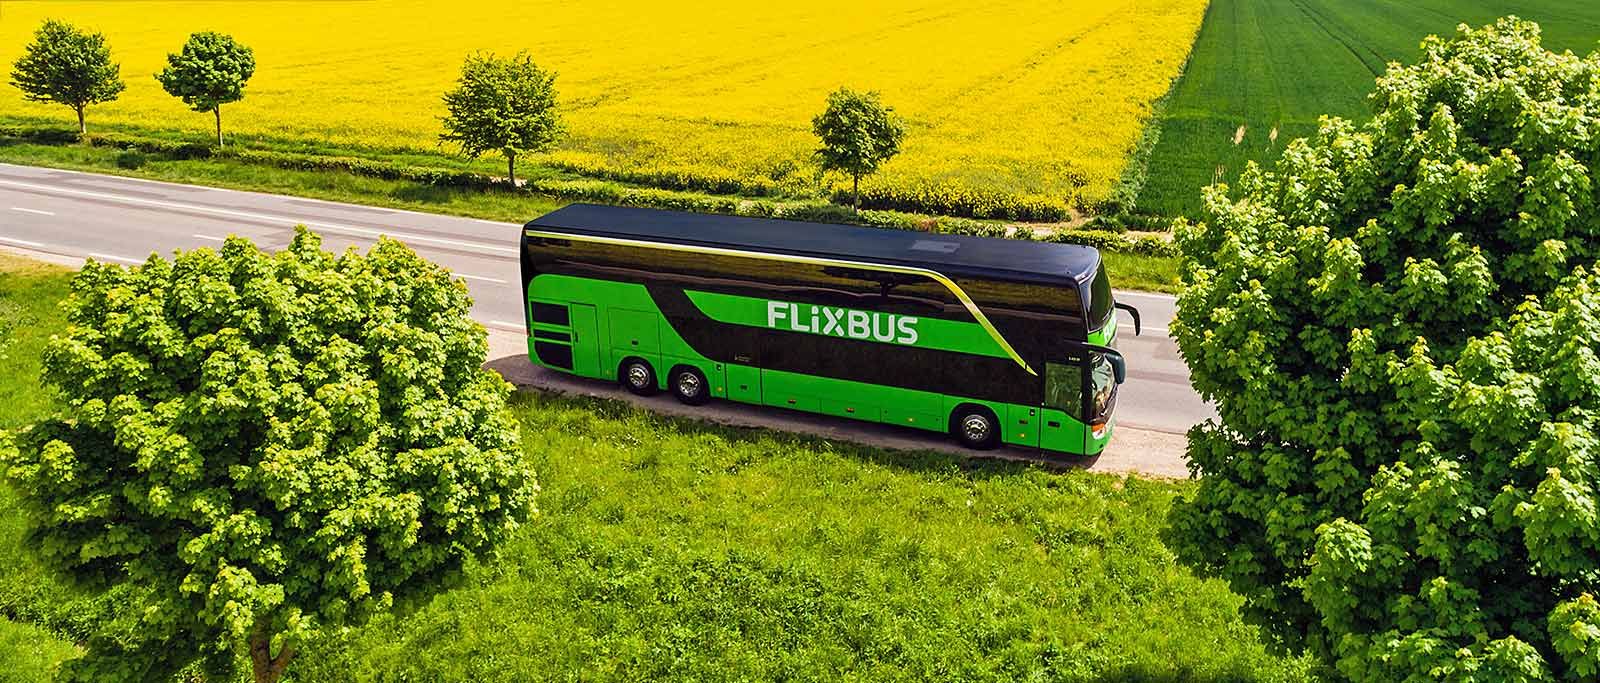 FlixBus запускает новые рейсы в Польшу и Чехию через Львов: детали